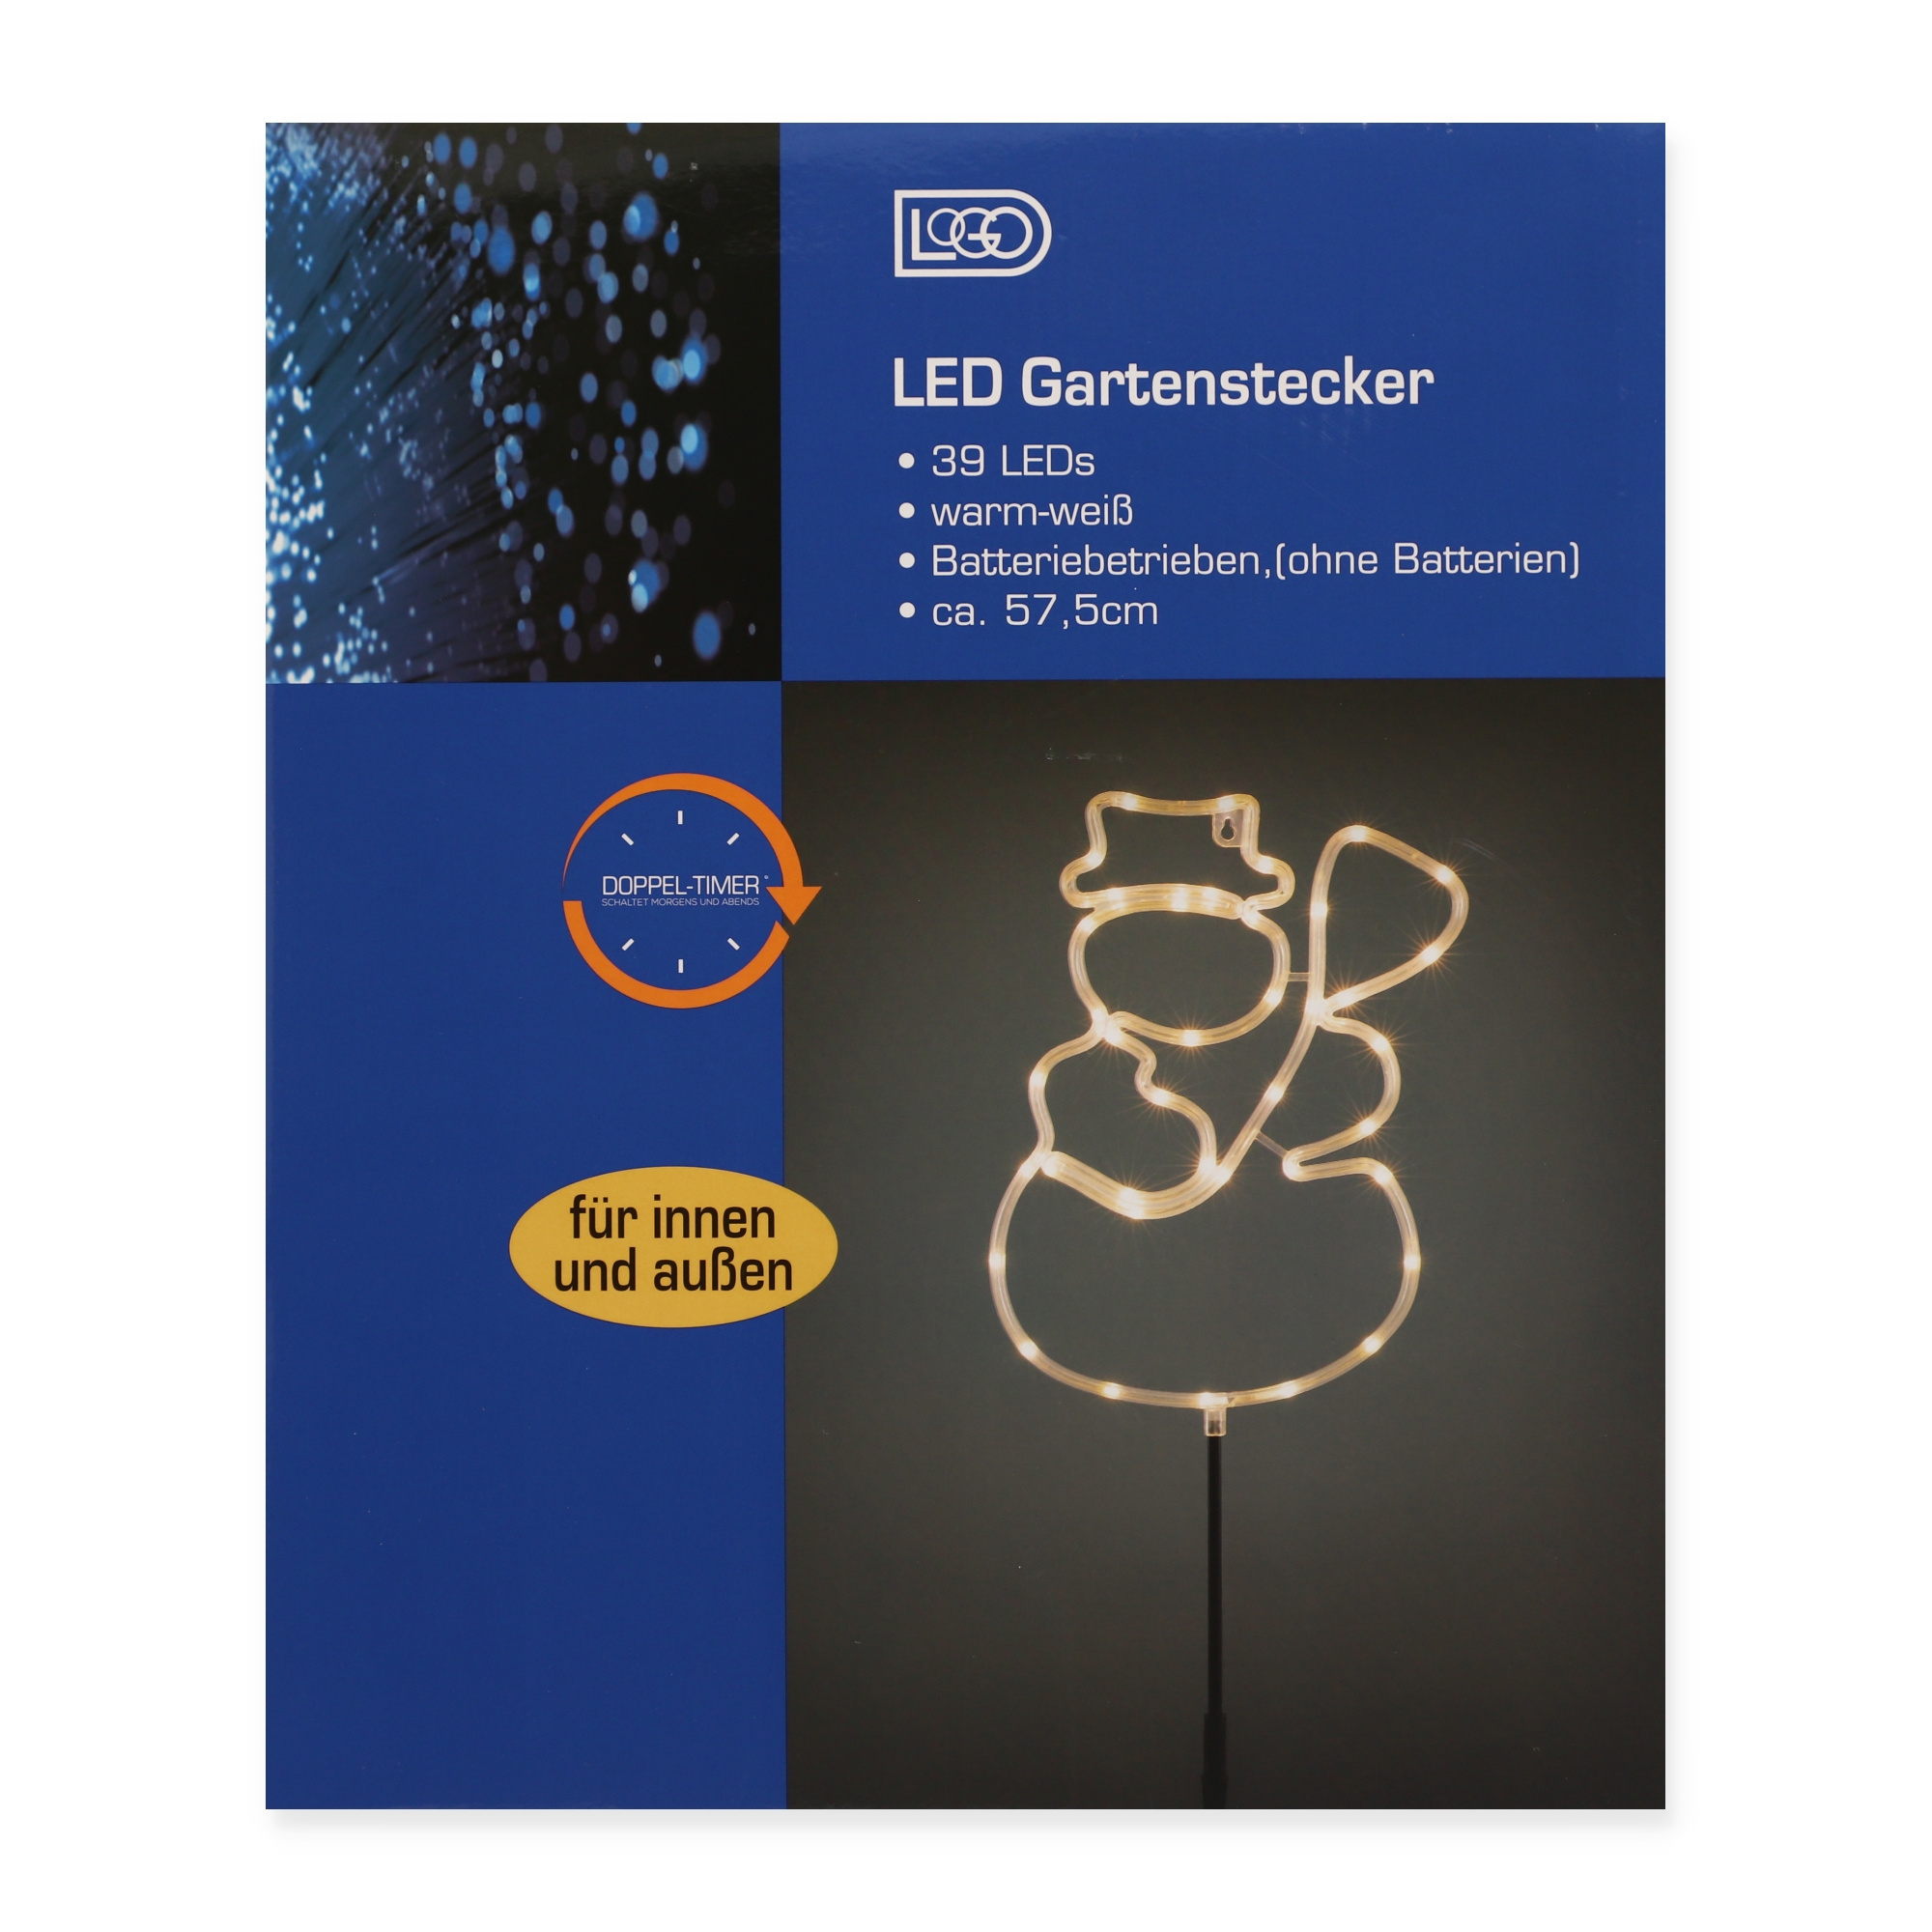 LED-Gartenstecker 'Schneemann' 39 LEDs warmweiß 22,3 x 57,5 cm + product picture